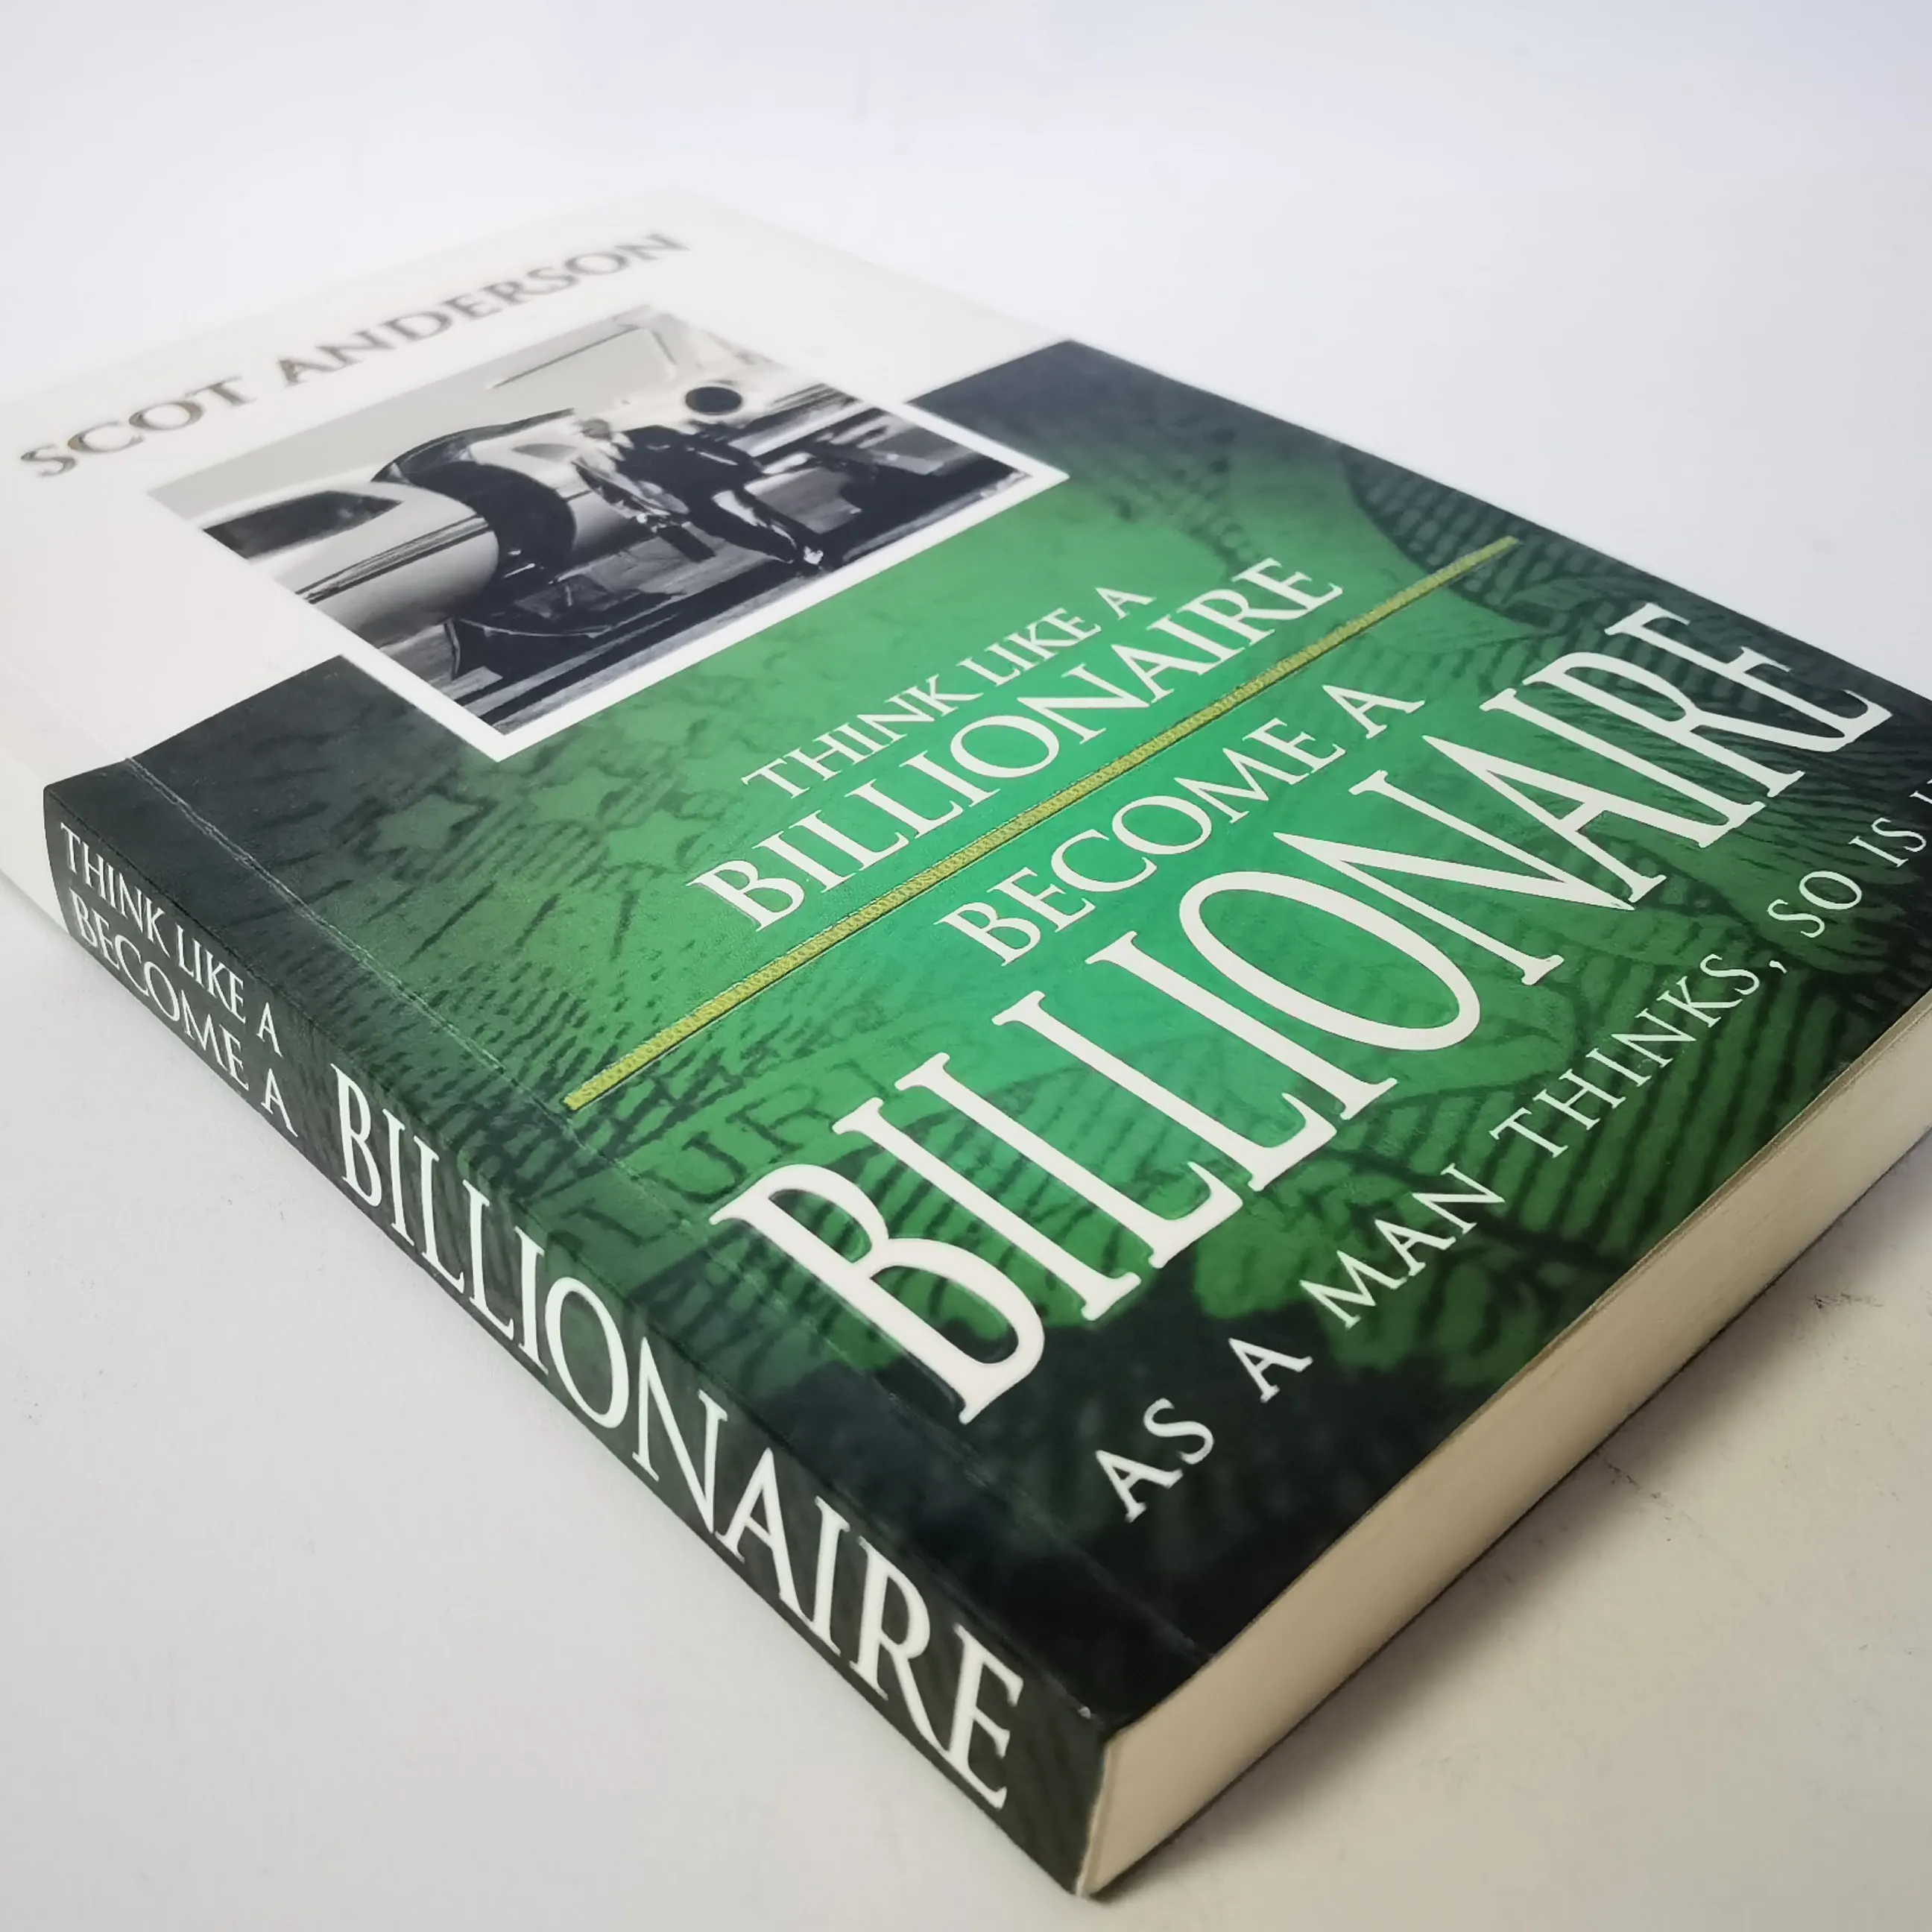 Vendita calda romanzo stampa Paperback pensa come un miliardario diventare un miliardario Scot Anderson libri di romanzi inglesi